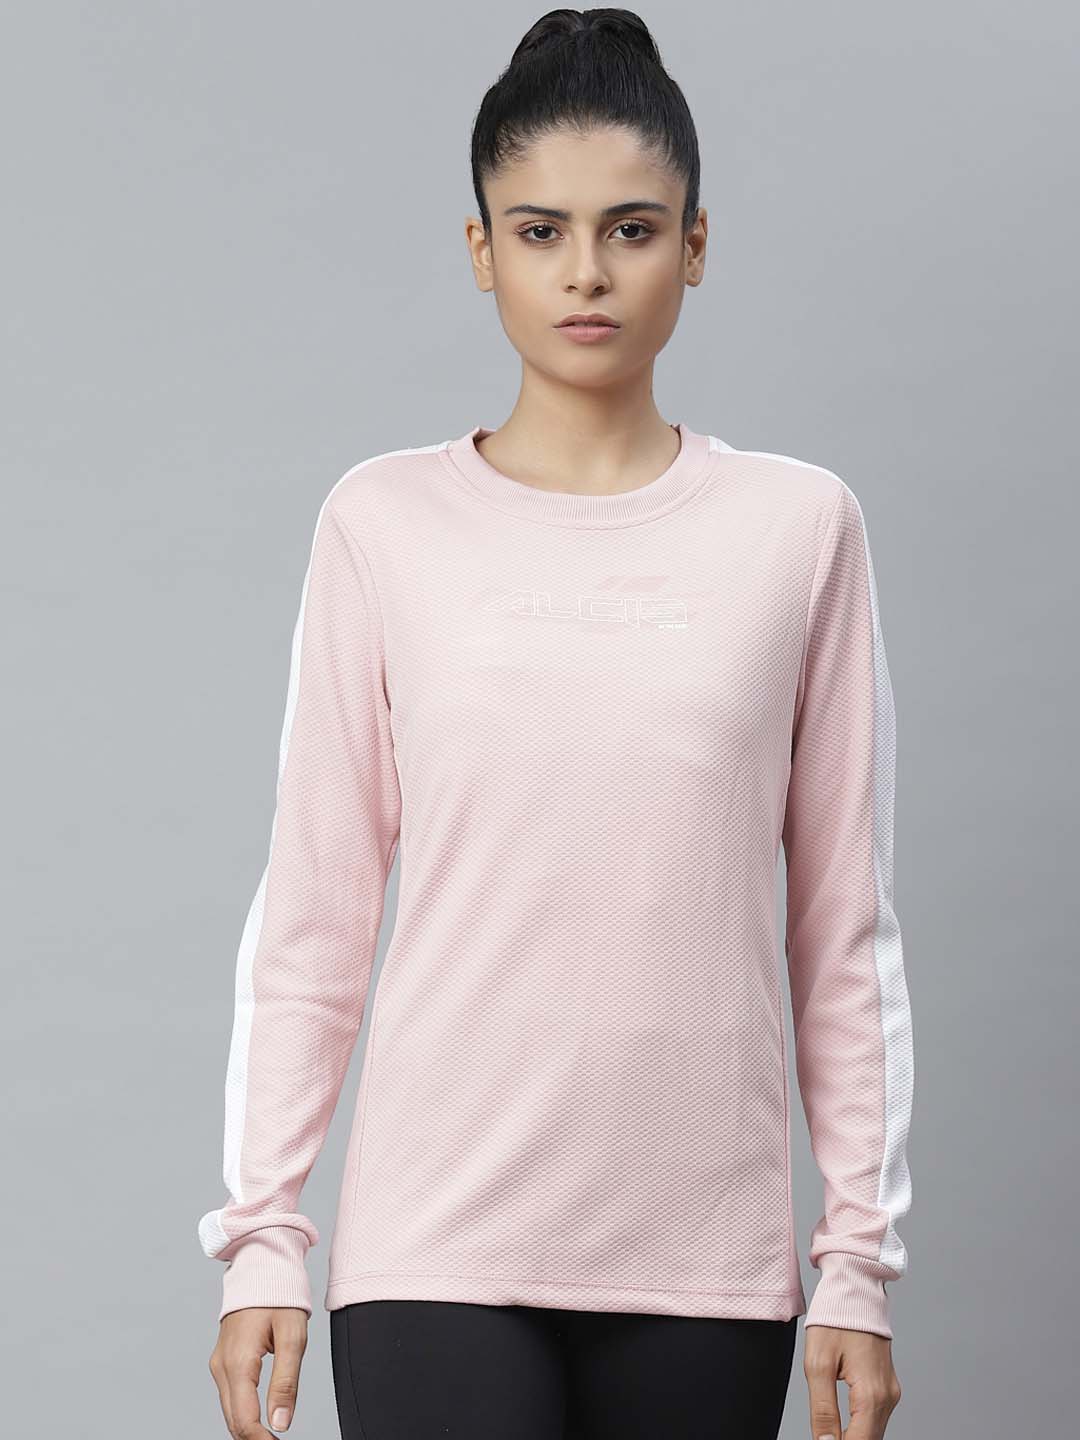 Alcis Women Pink Self Design Sweatshirt